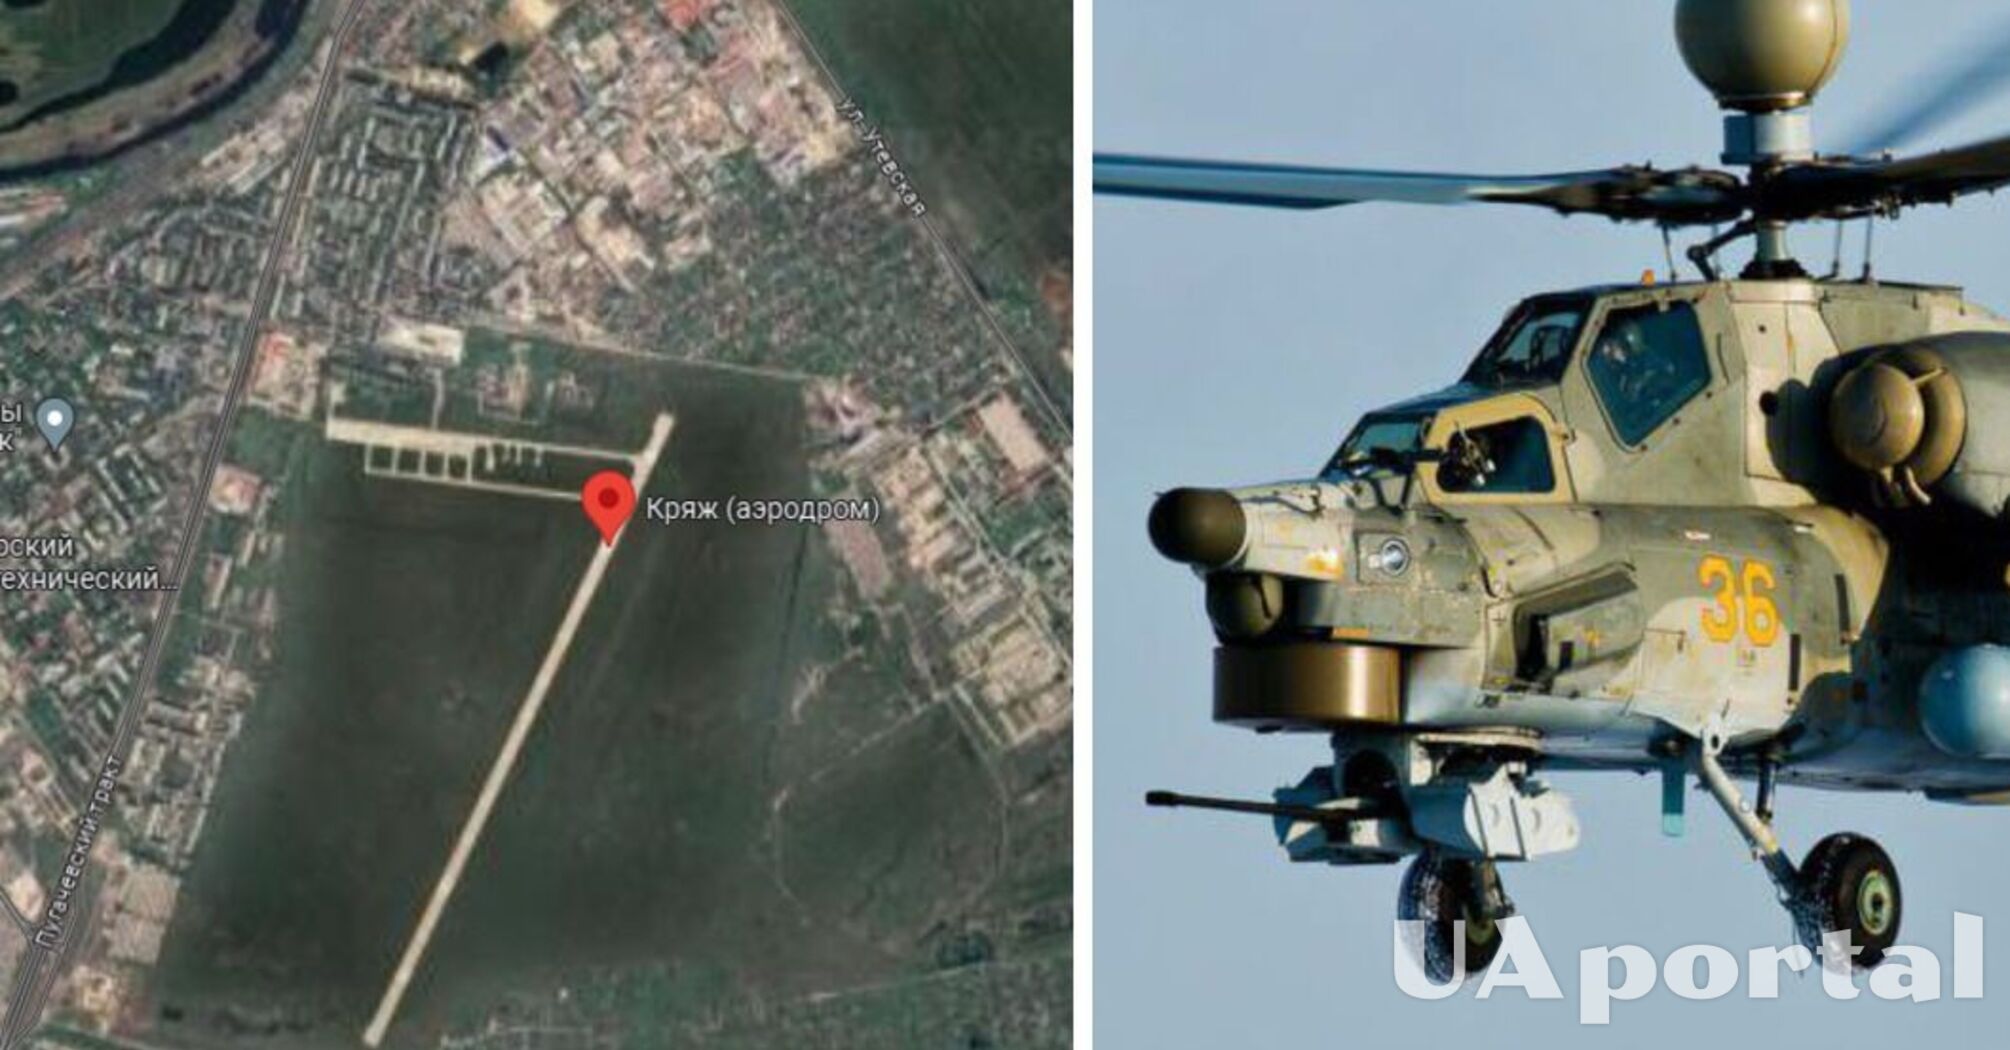 На аэродроме Кряж в Самаре дроны ГУР уничтожили вертолет Ми-8 и повредили еще два вертолета врага